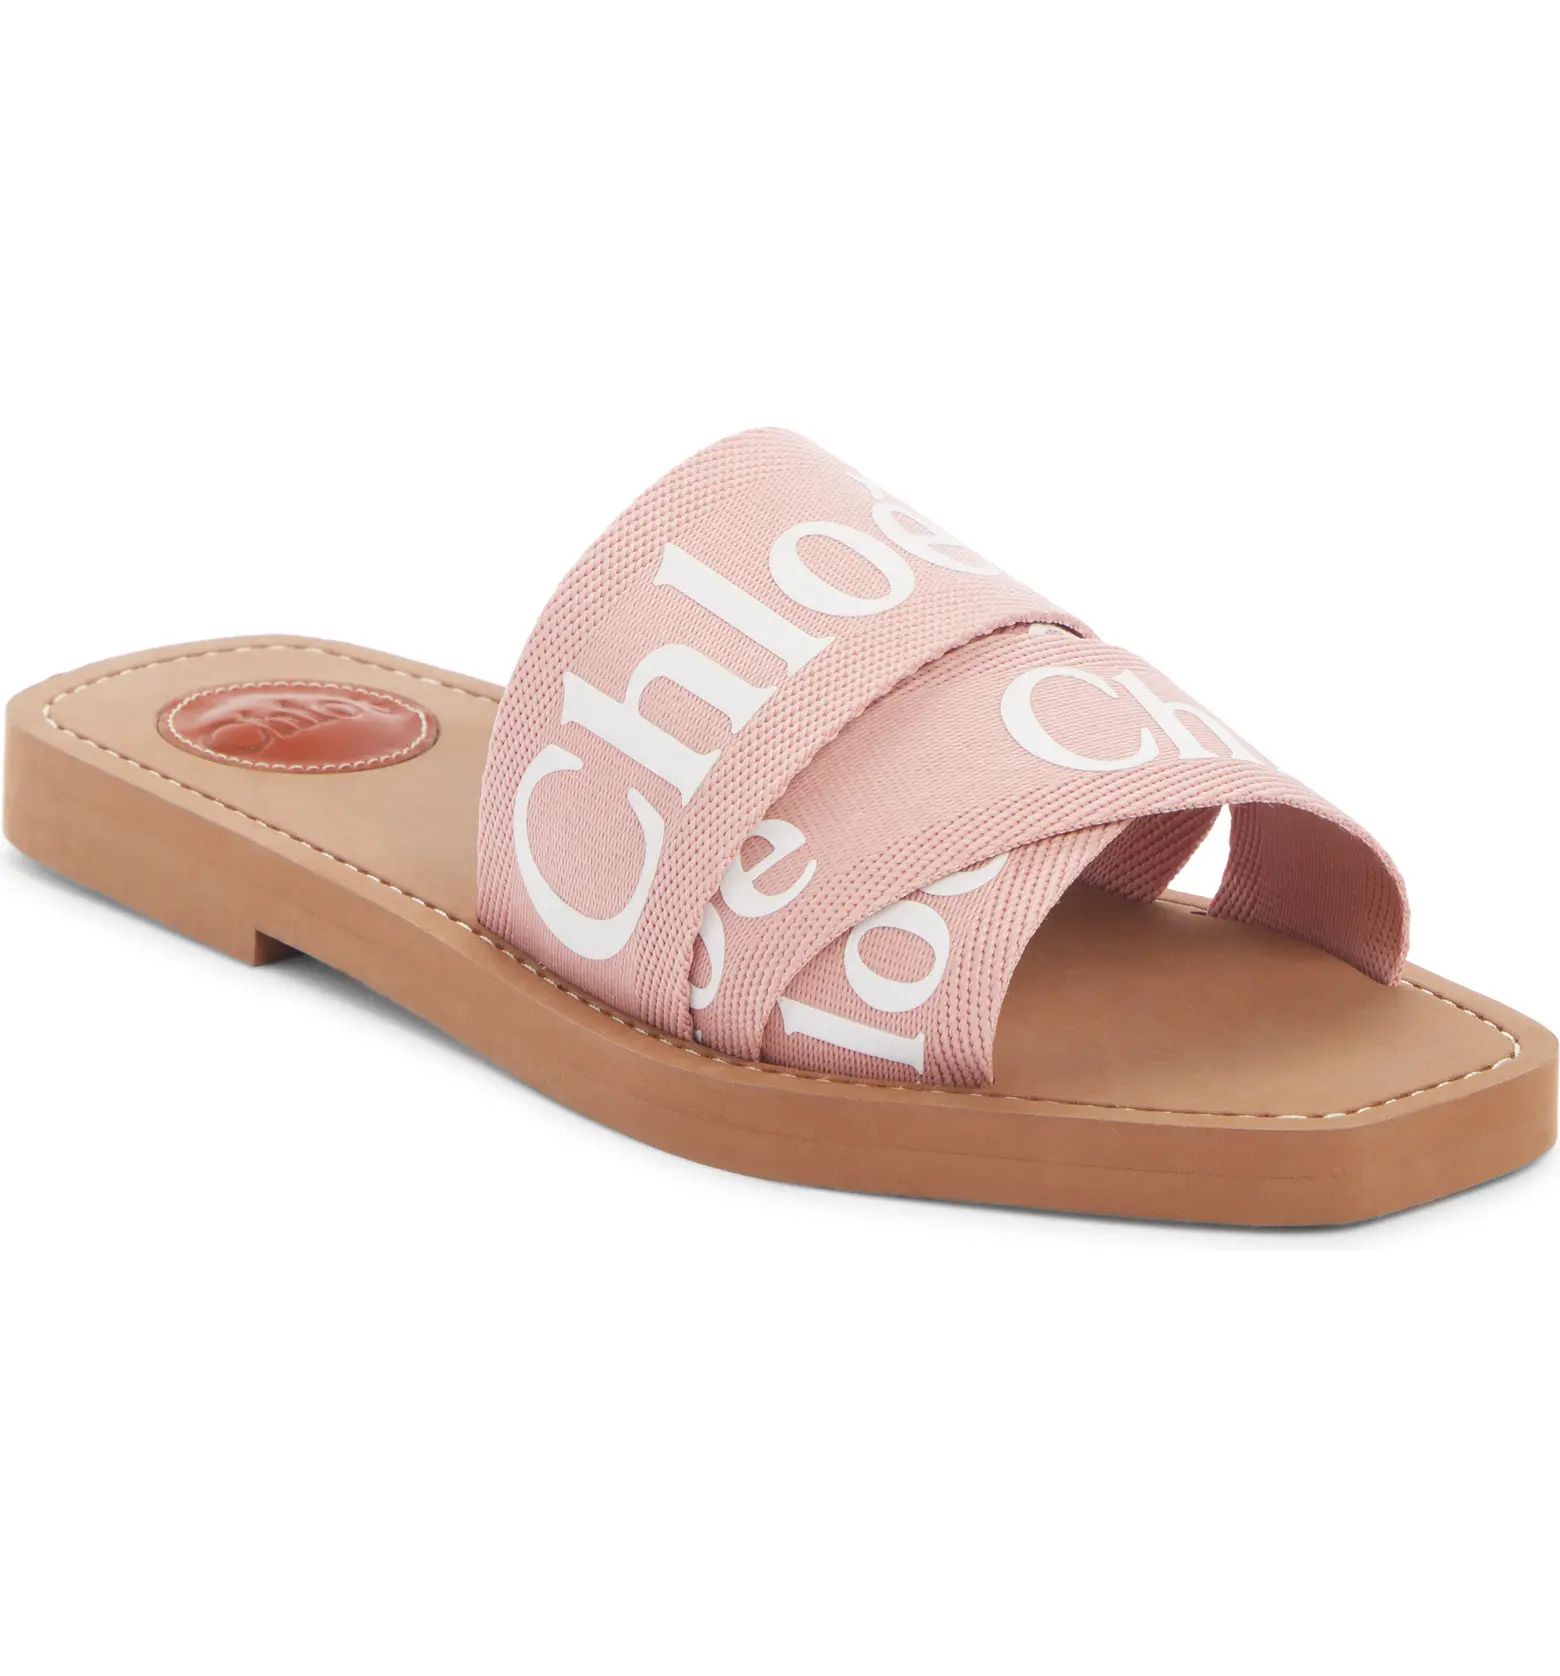 Chloé Logo Slide Sandal | Nordstrom | Nordstrom